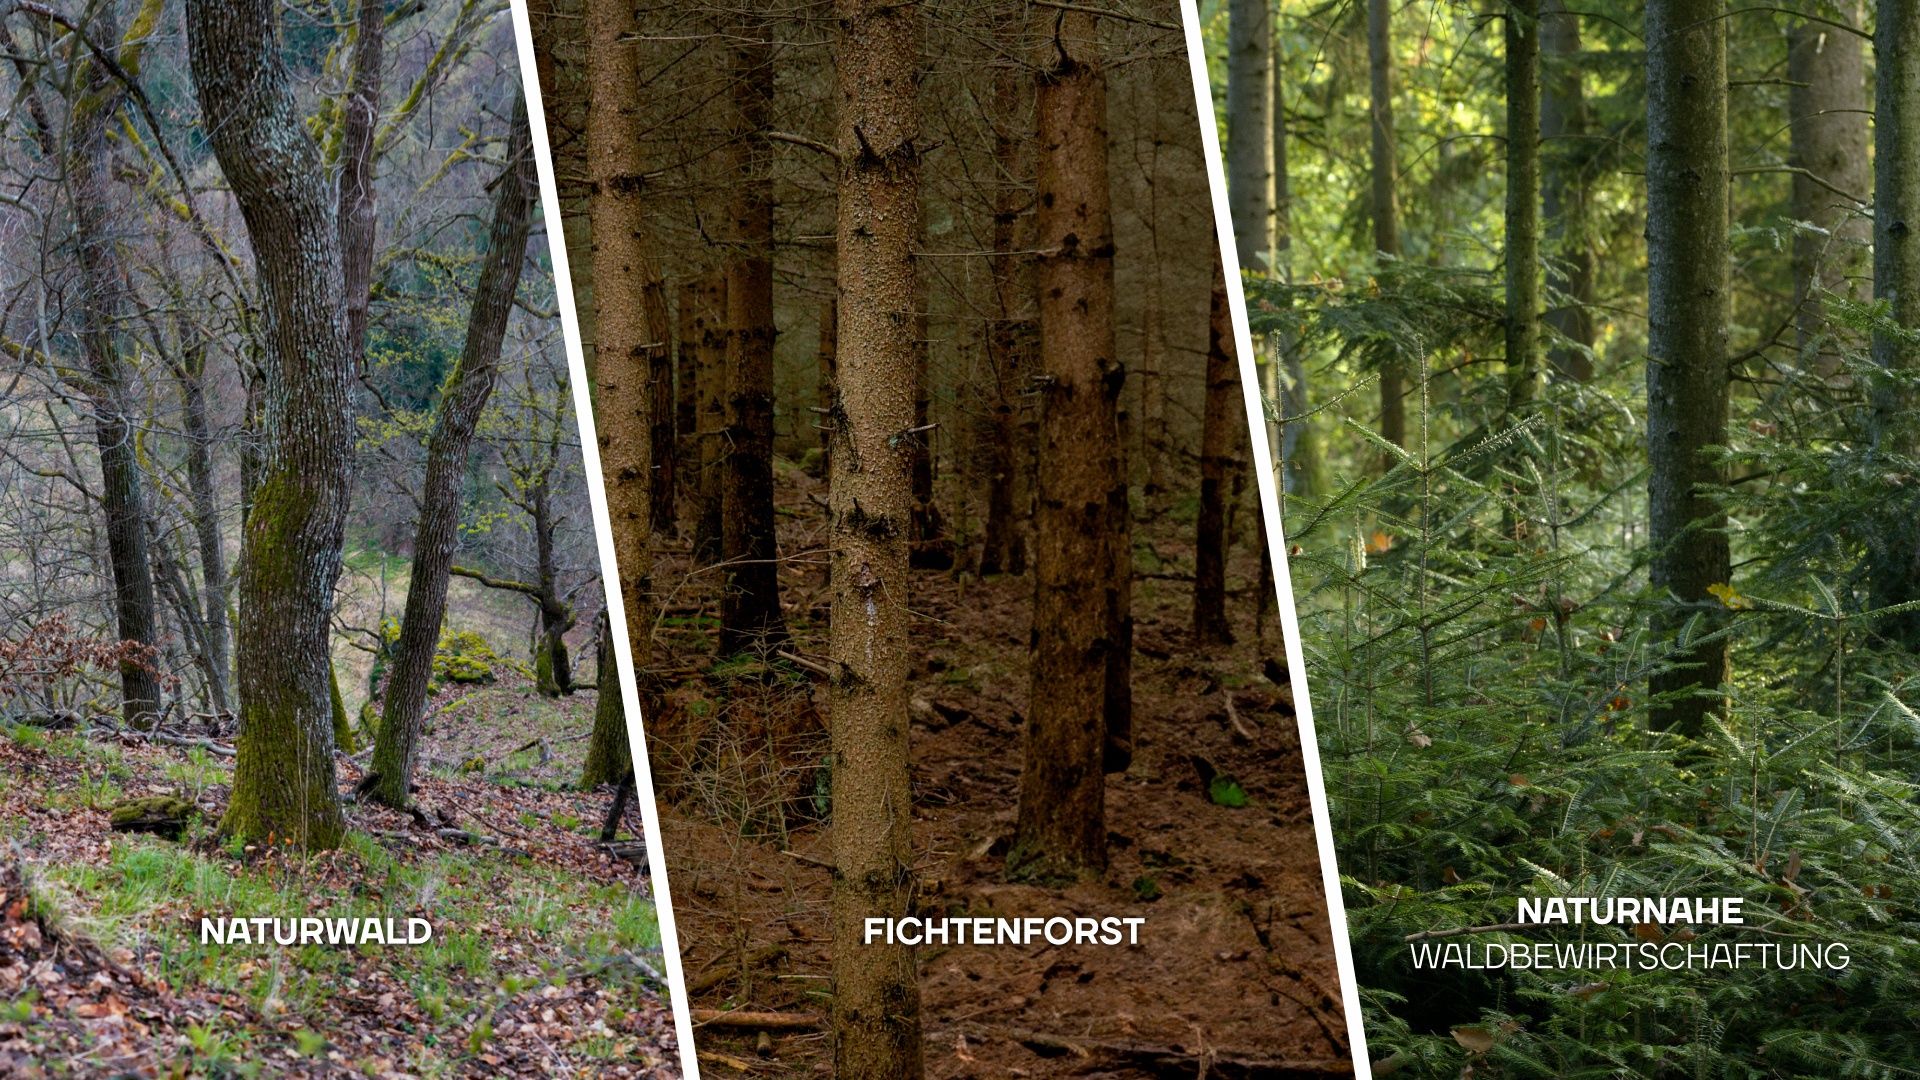 Ein dreigeteiltes Bild ist zu sehen. In einem eine Aufnahme von einem Naturwald mit großen, alten Bäumen, eine Aufnahme von einem dunklen Fichtenforst und eine Aufnahme von einem naturnah bewirtschafteten Wald mit vielen jungen Bäumen.